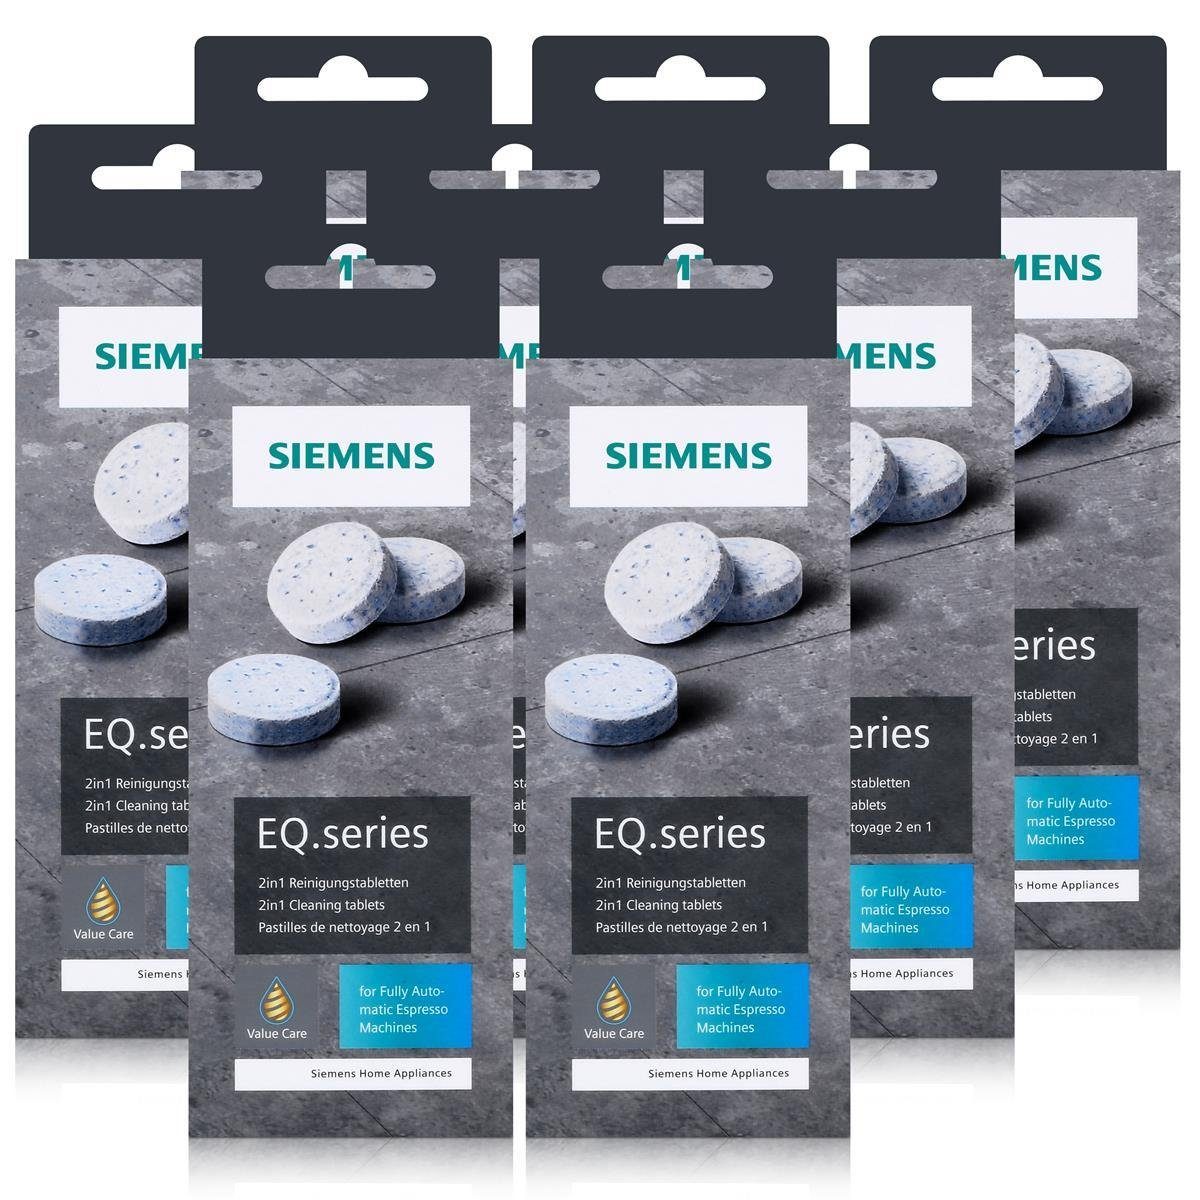 22g Siemens Für bestes Aroma EQ.series Reinigungstabletten Reinigungstabletten SIEMENS - TZ80001A